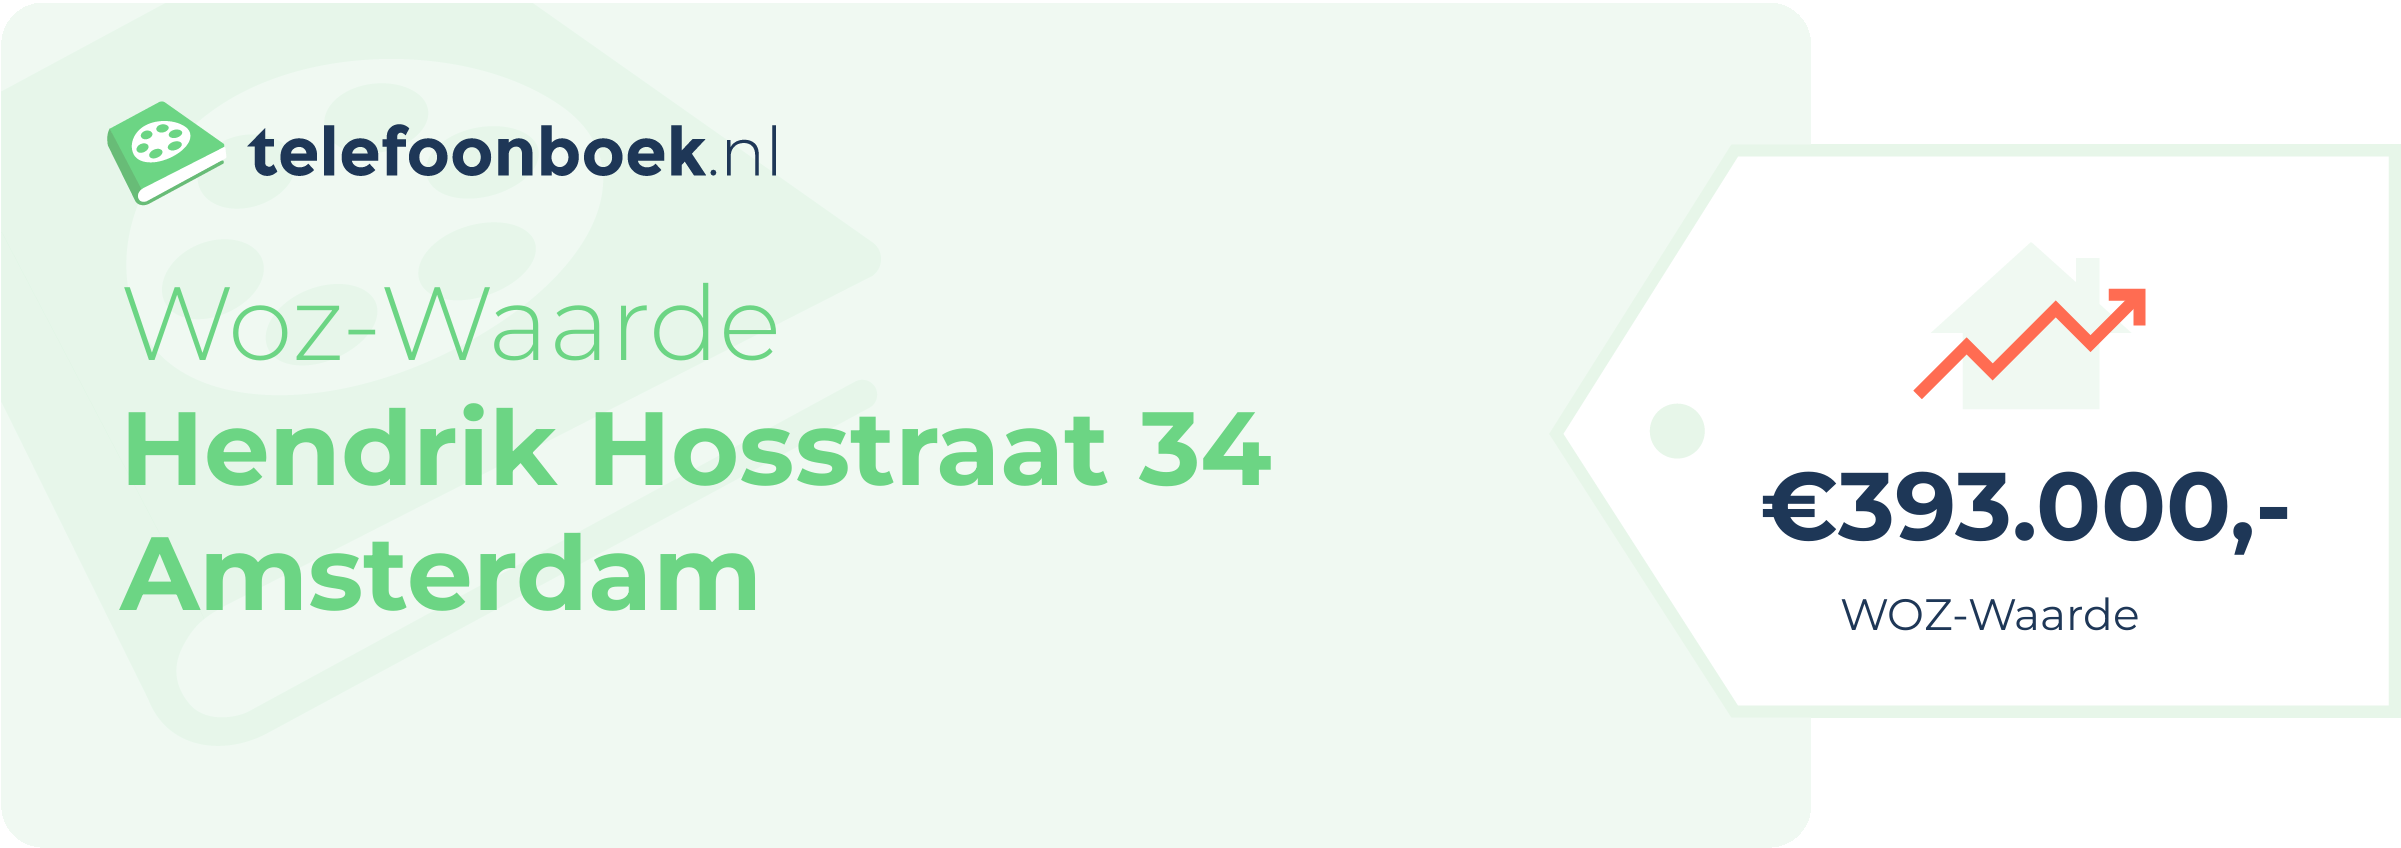 WOZ-waarde Hendrik Hosstraat 34 Amsterdam